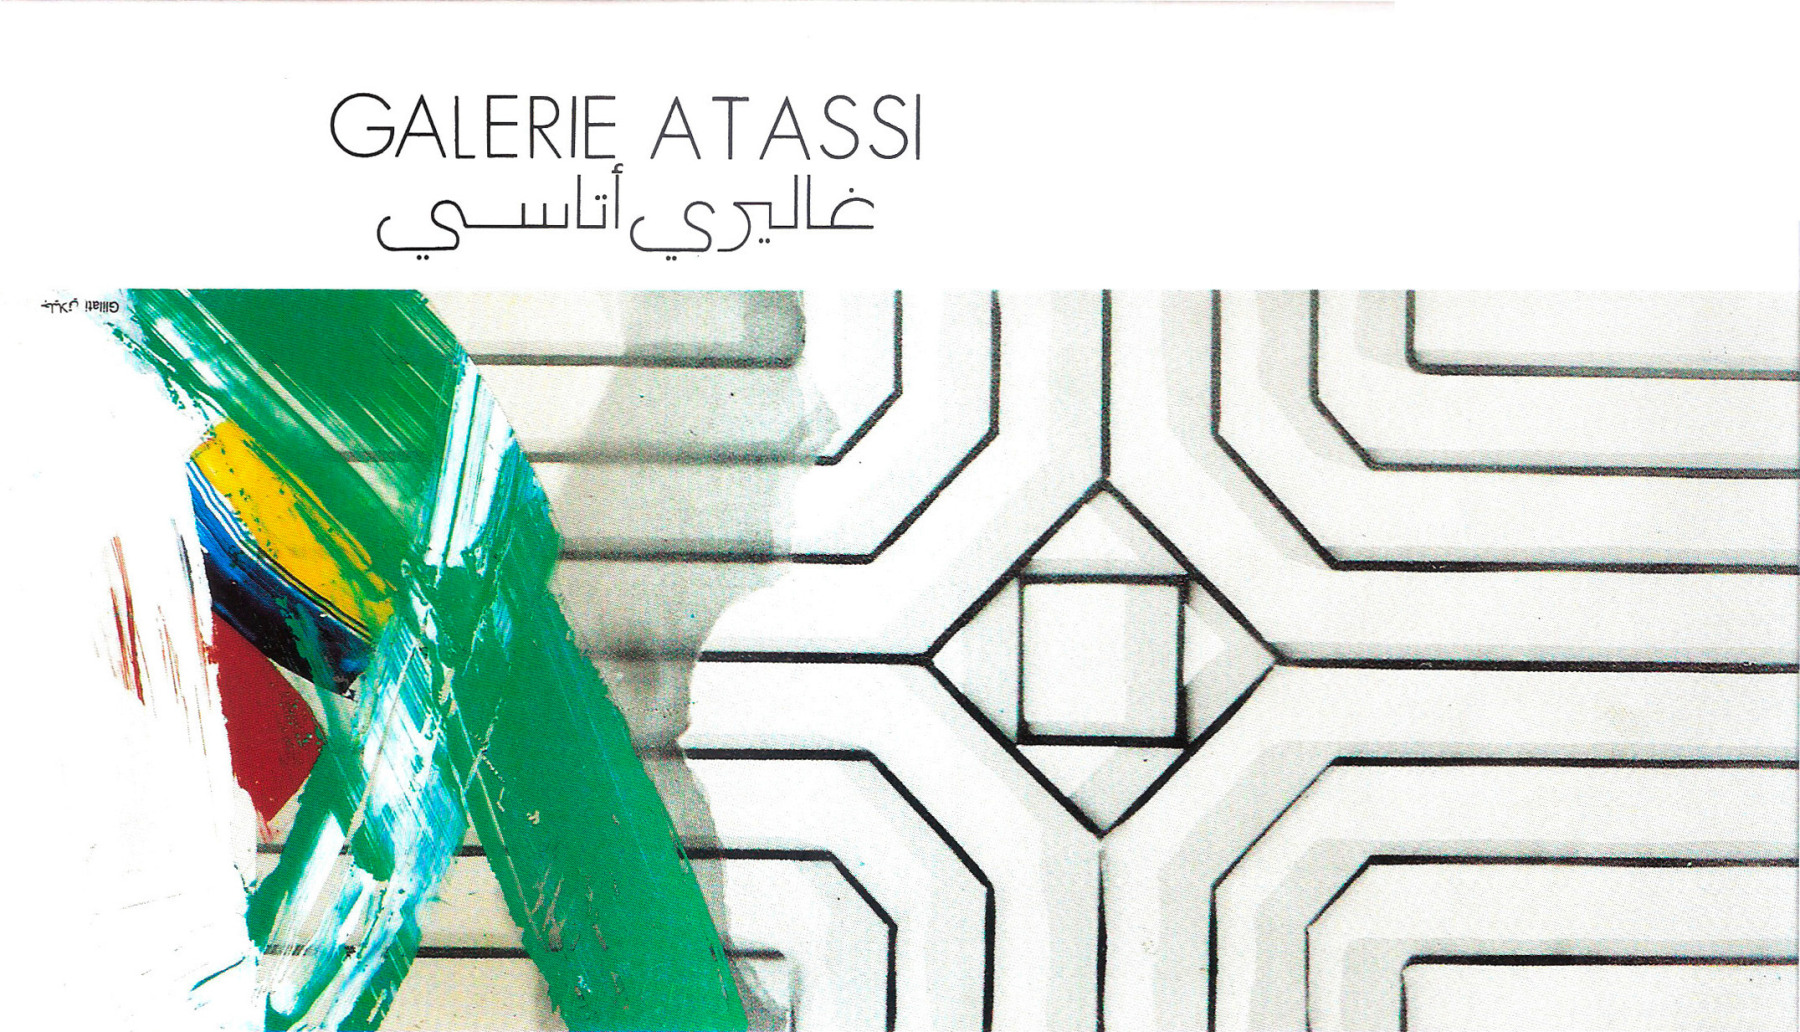 أرشيف غاليري أتاسي - مجموعات أرشيفية - Atassi Foundation